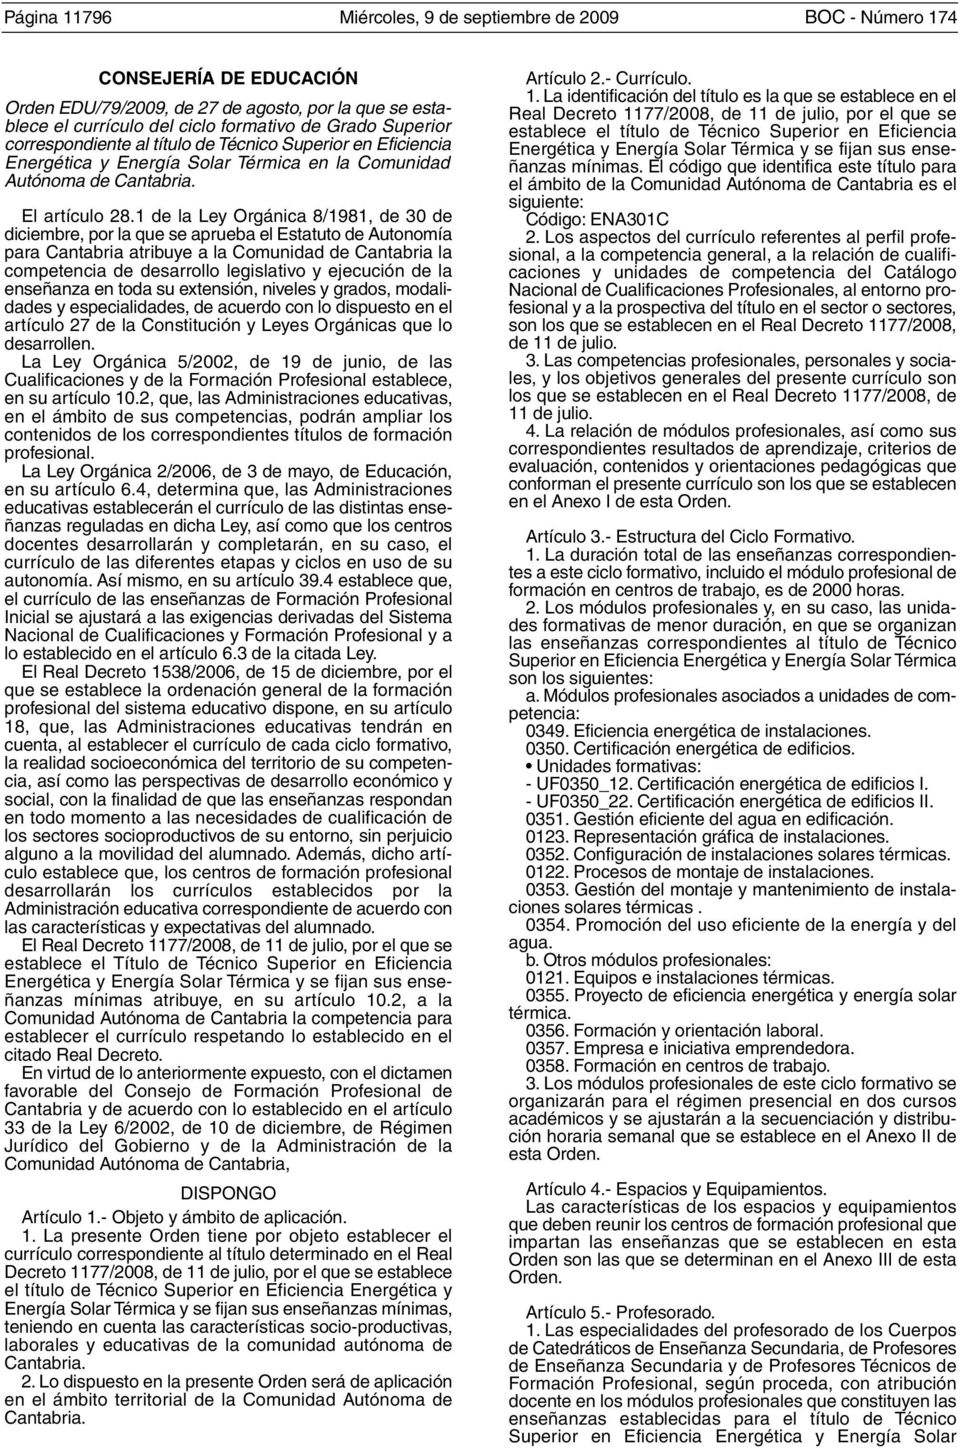 1 de la Ley Orgánica 8/1981, de 30 de diciembre, por la que se aprueba el Estatuto de Autonomía para Cantabria atribuye a la Comunidad de Cantabria la competencia de desarrollo legislativo y